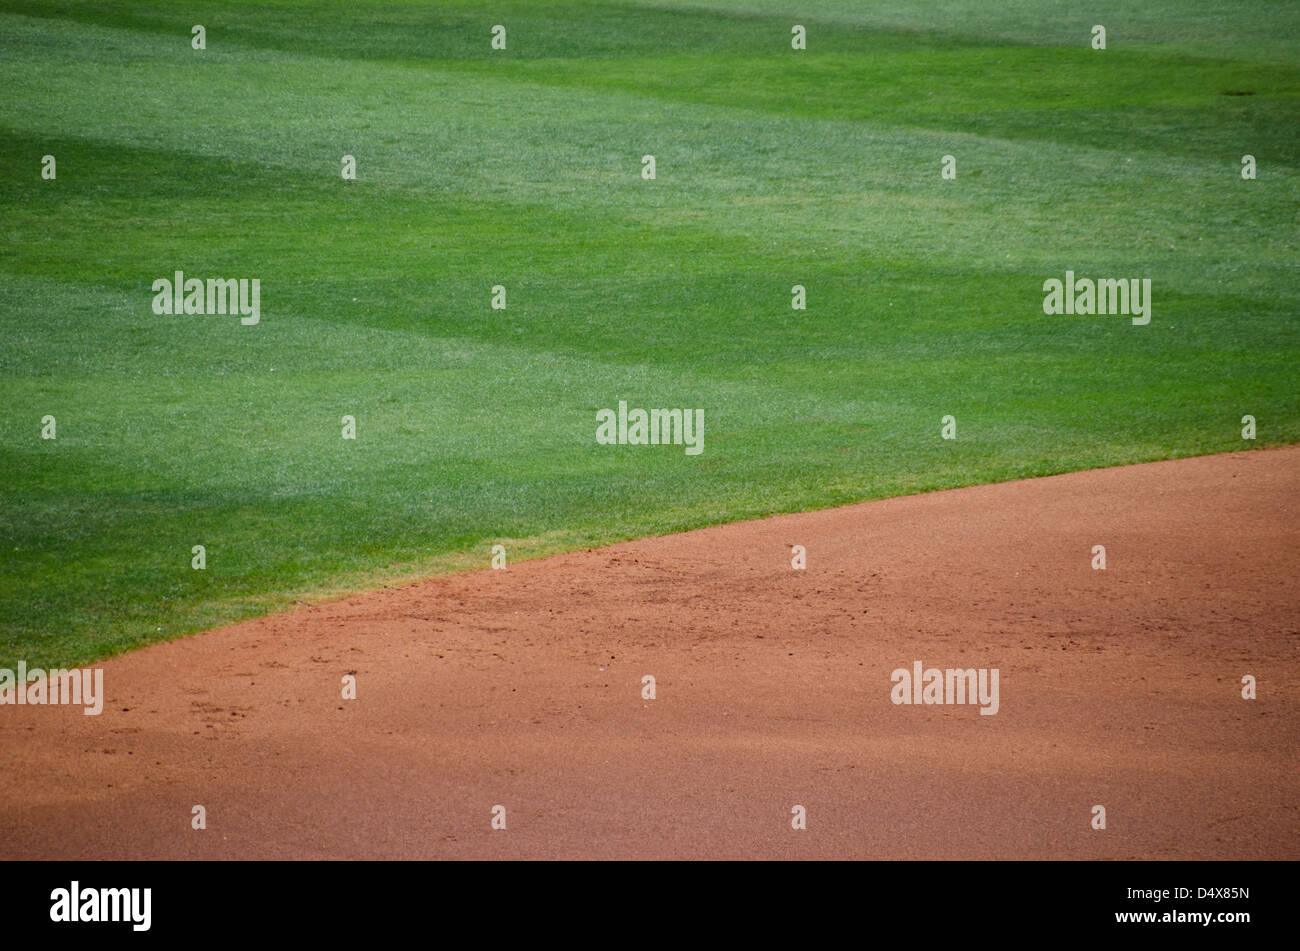 Résumé fond texture de la brown la saleté et l'herbe verte d'un terrain de baseball professionnel Banque D'Images